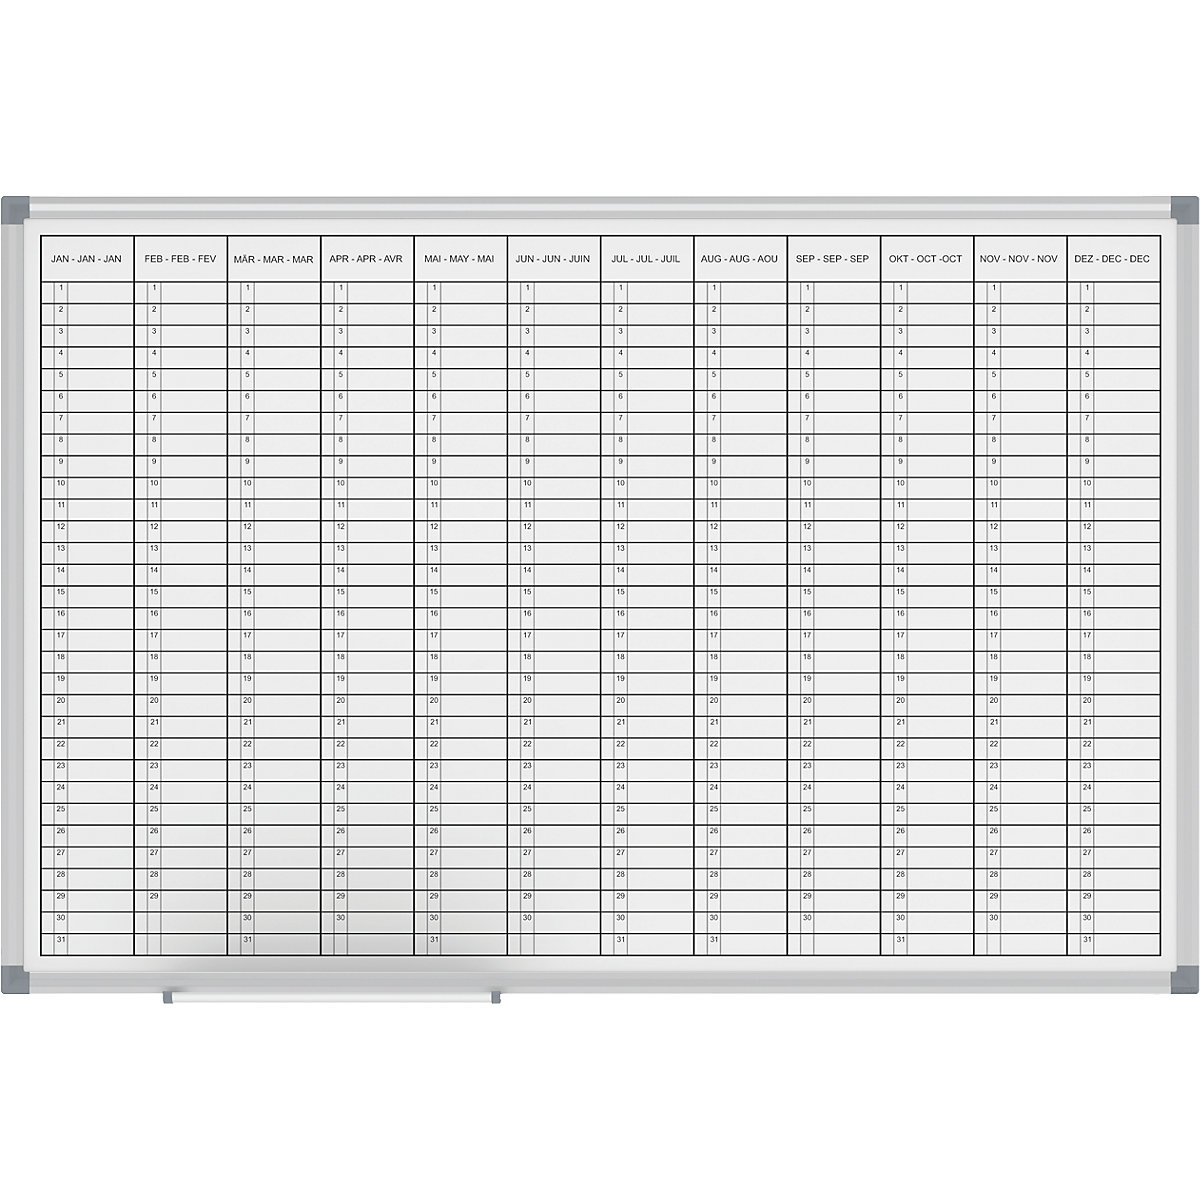 Plánovací tabule – MAUL, roční plánovač, náhled 12 měsíců, šířka 900 mm